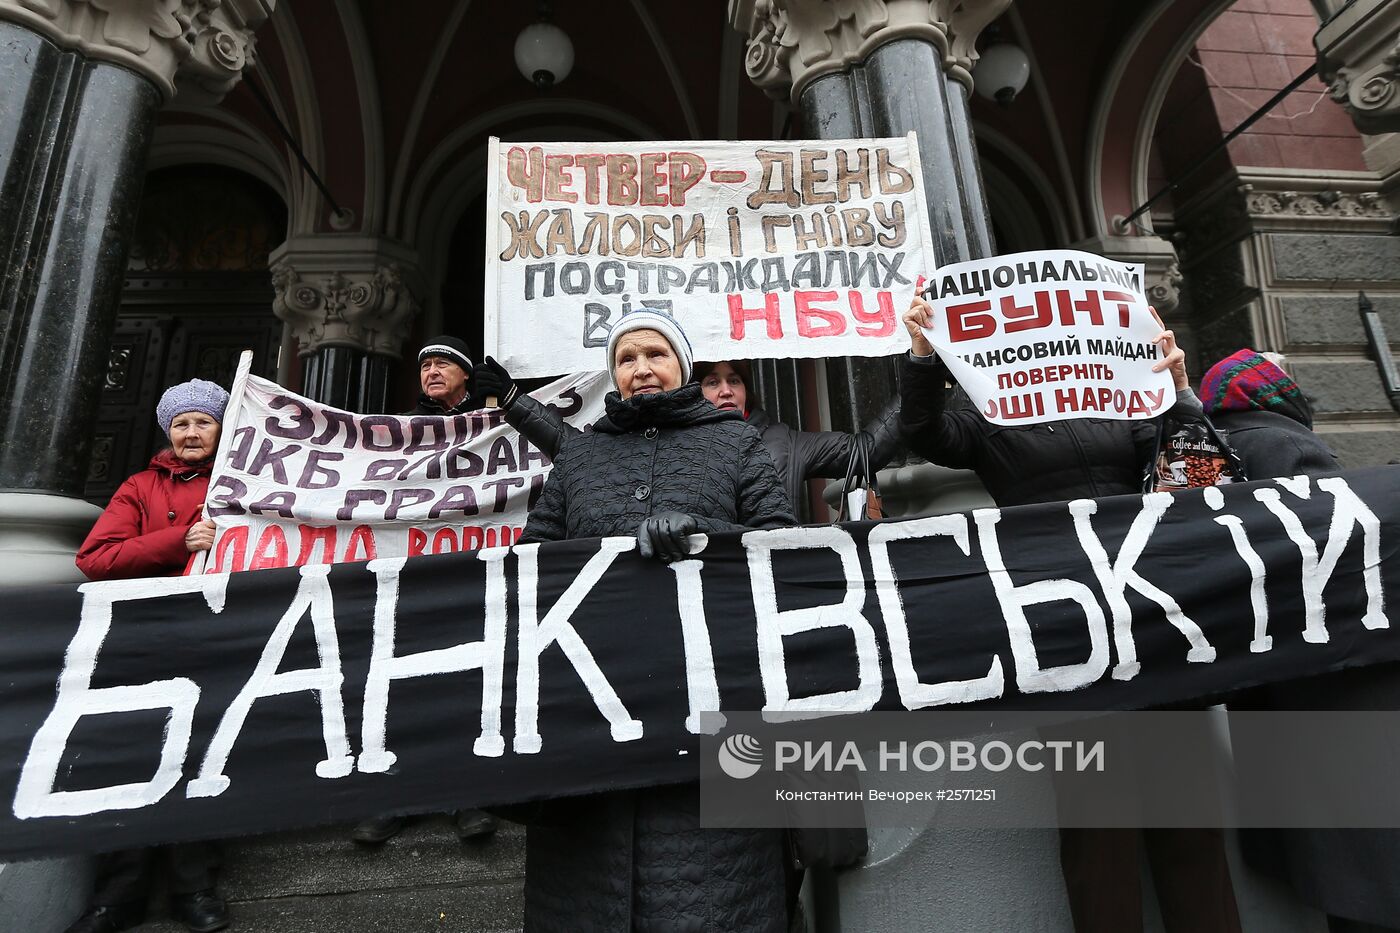 Митинг против коррупции в банковской сфере в Киеве